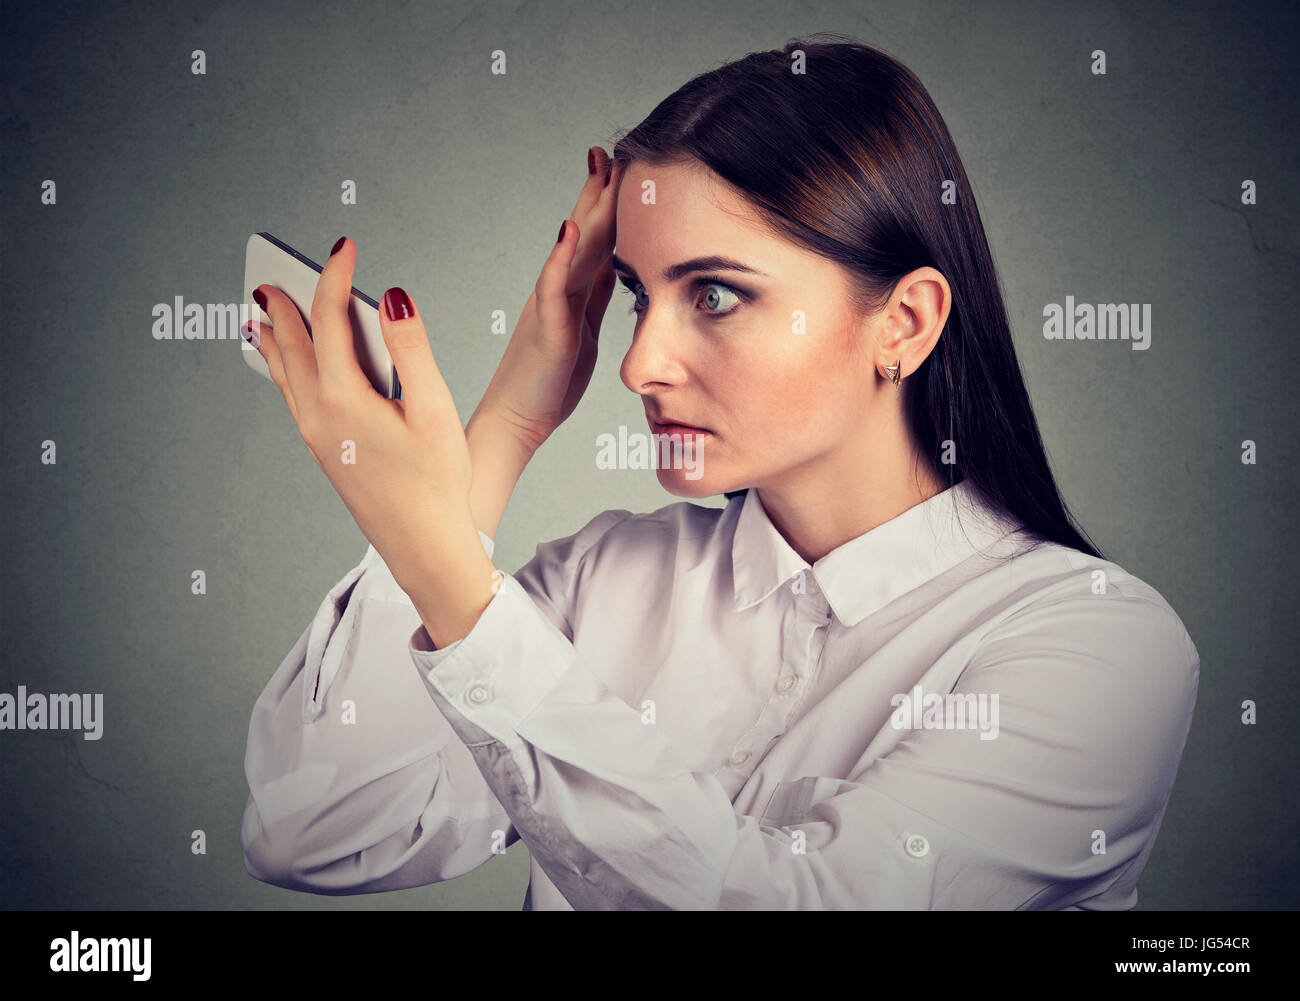 Uberrascht Sie Haarausfall Ist Verargert Frau Hat Geheimratsecken Menschliche Emotionen Stockfotografie Alamy